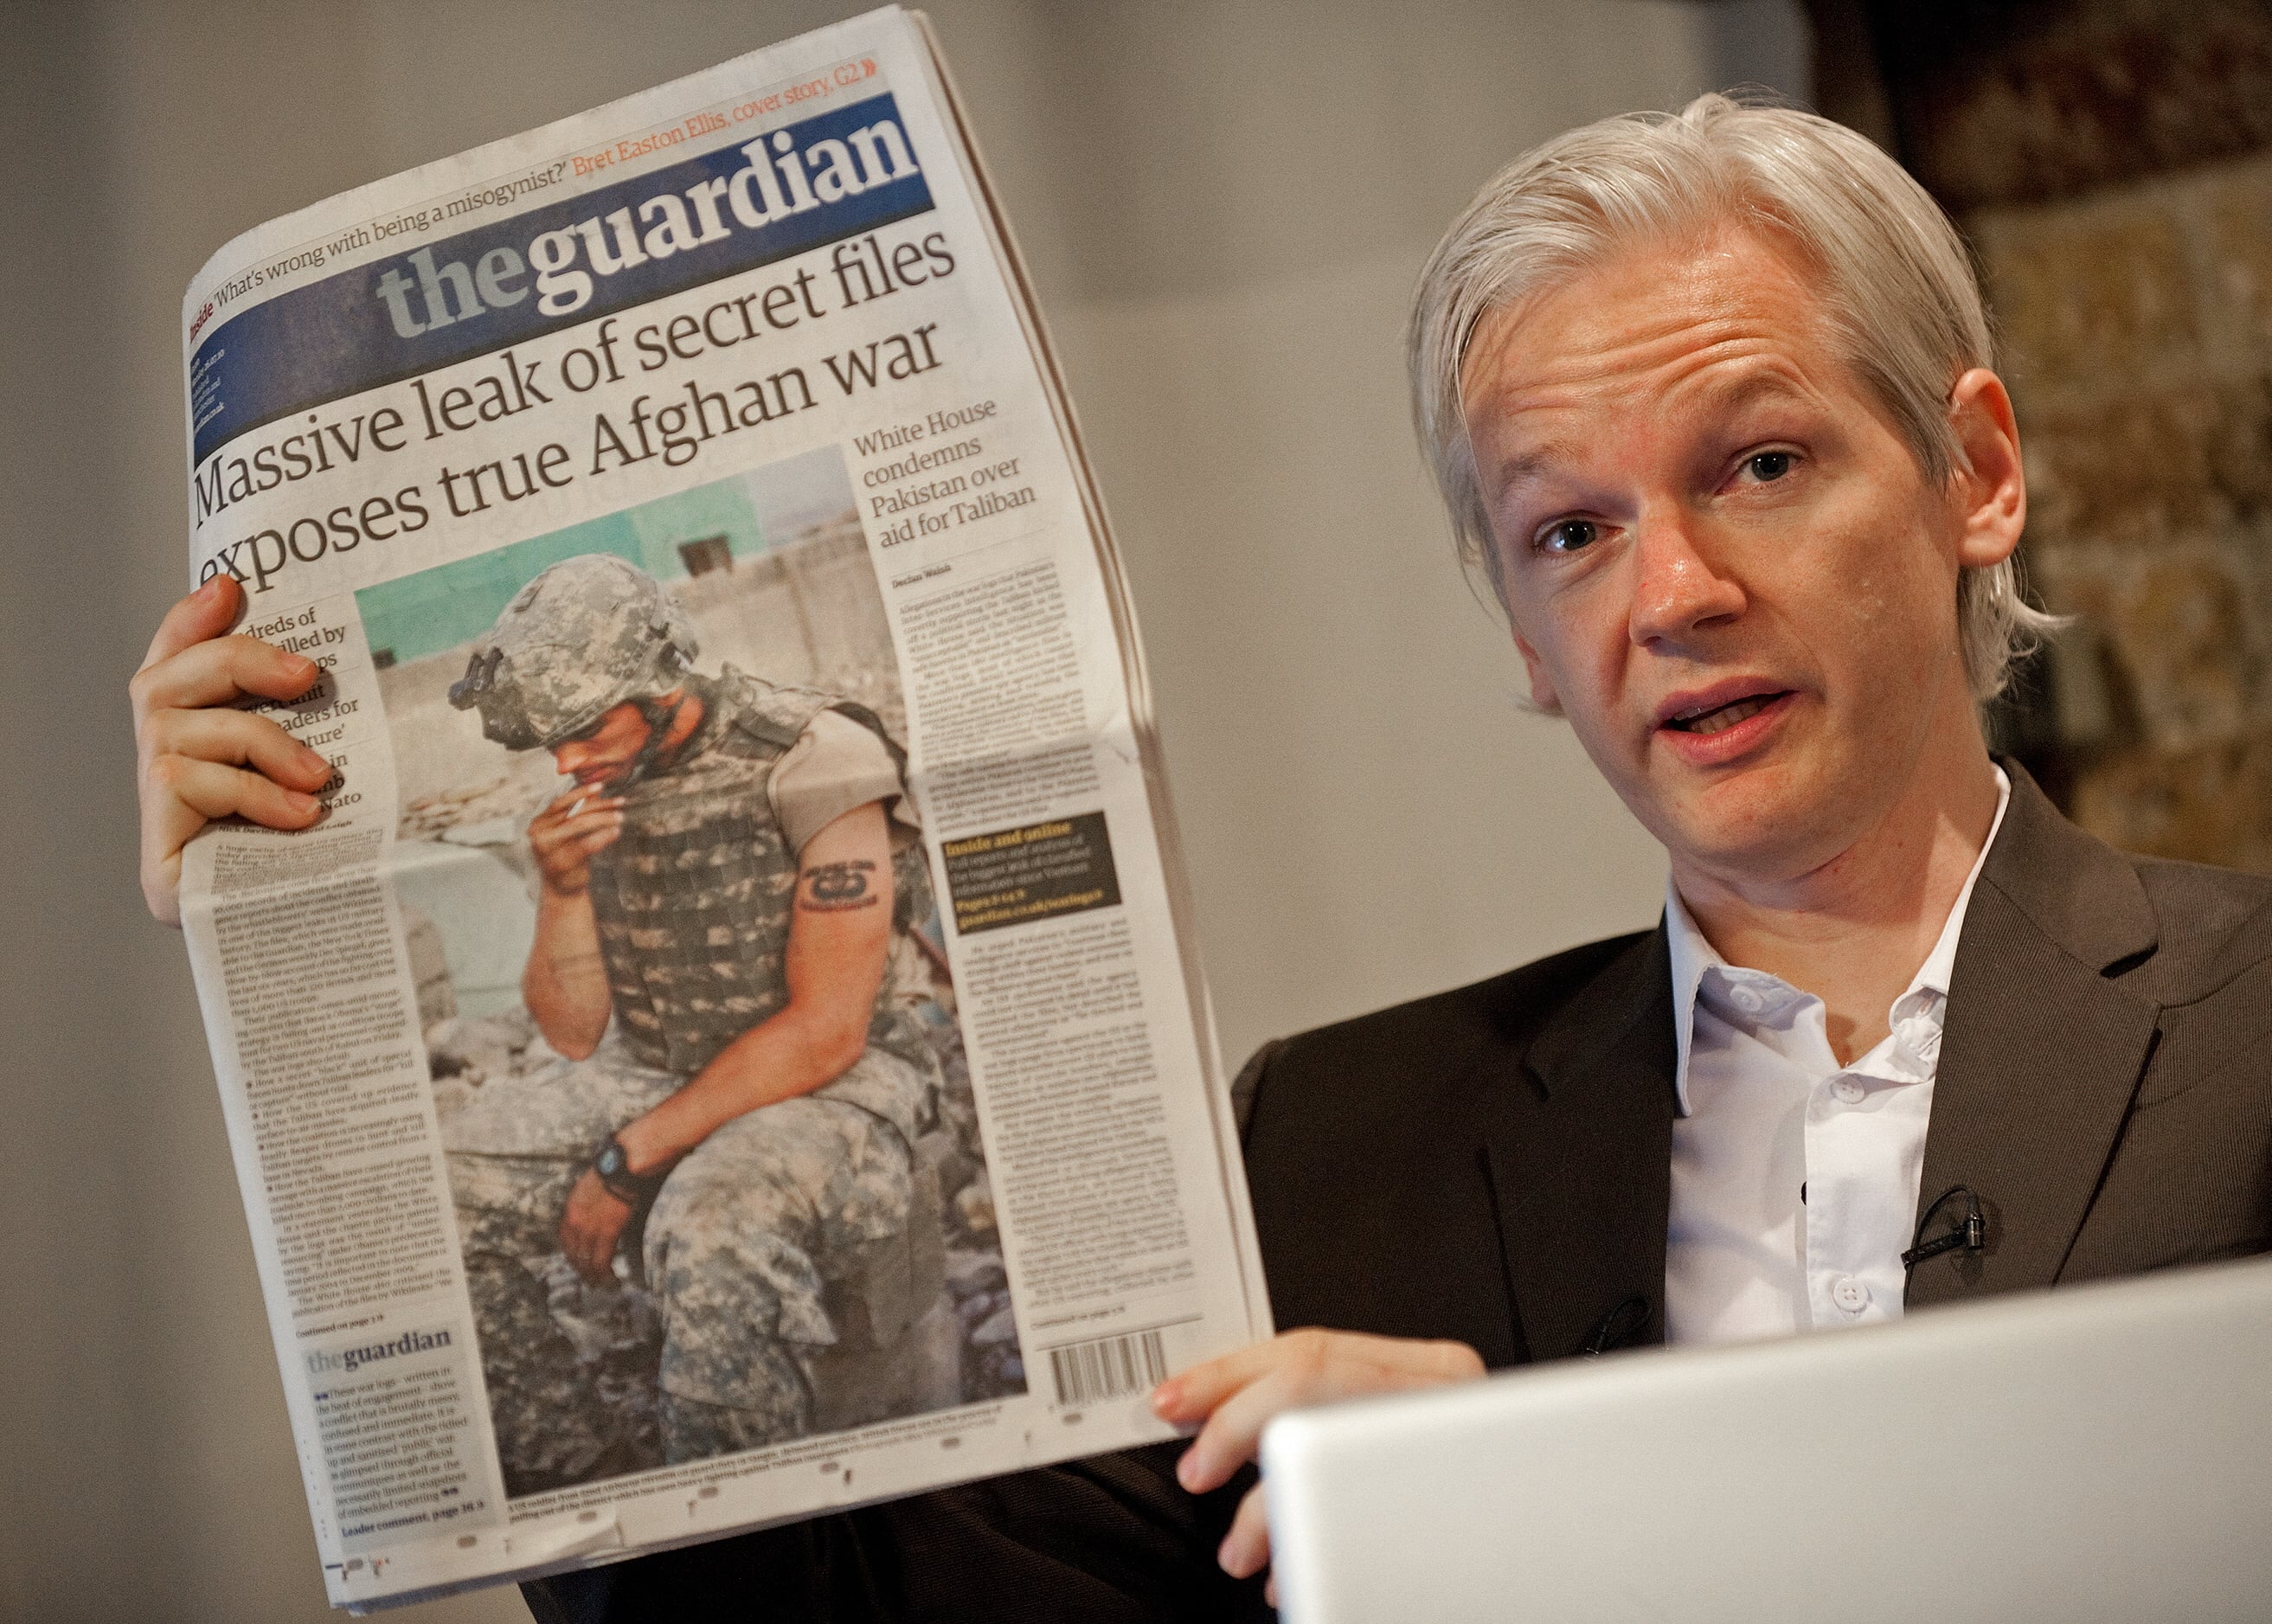 Julian Assange sostiene una copia del periódico The Guardian durante una conferencia de prensa en Londres el 26 de julio de 2010. (Foto de LEON NEAL / AFP).